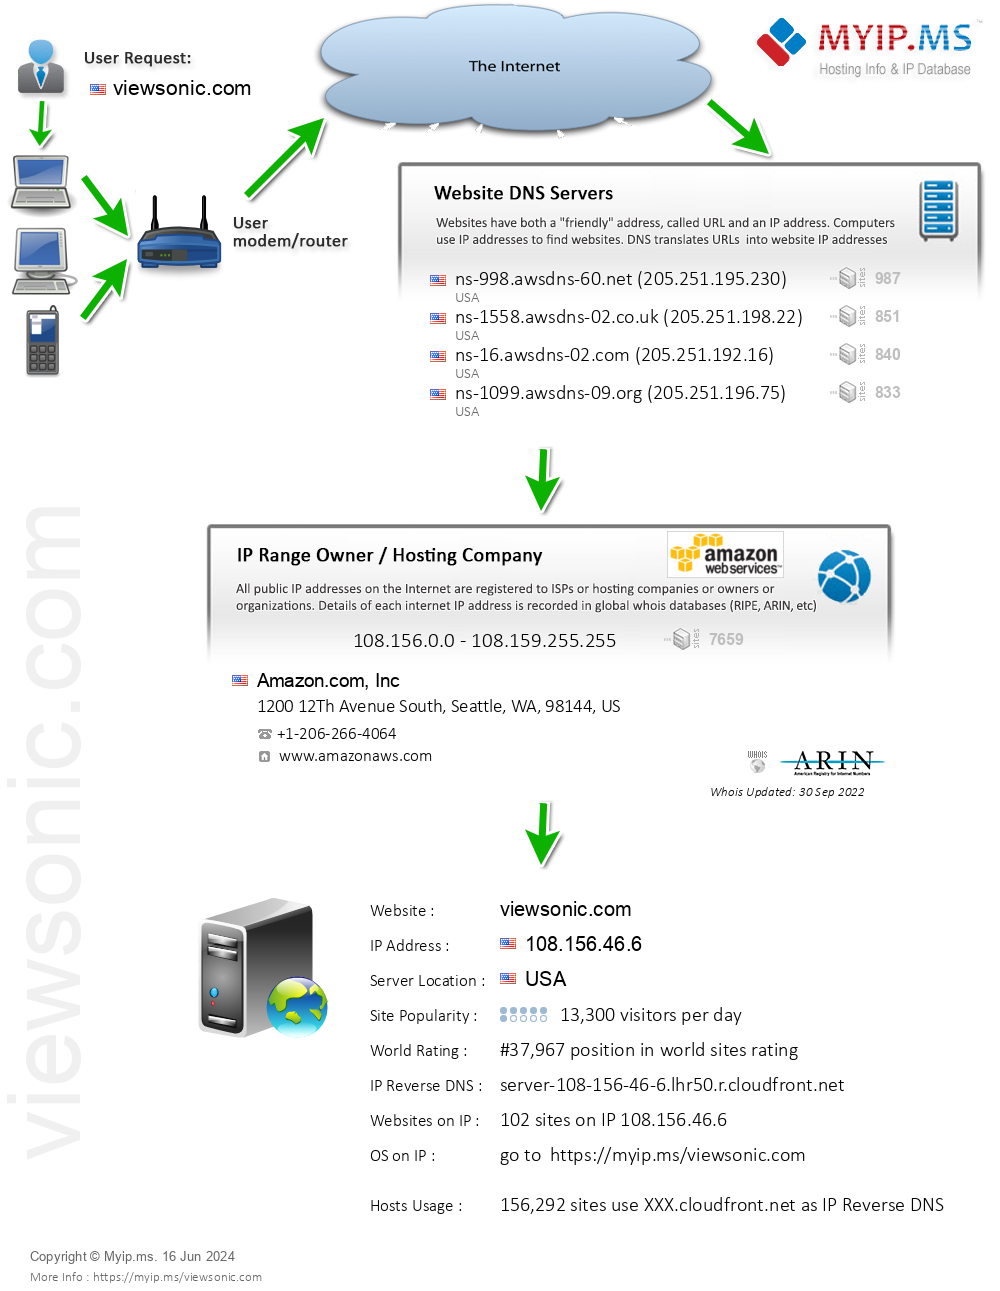 Viewsonic.com - Website Hosting Visual IP Diagram